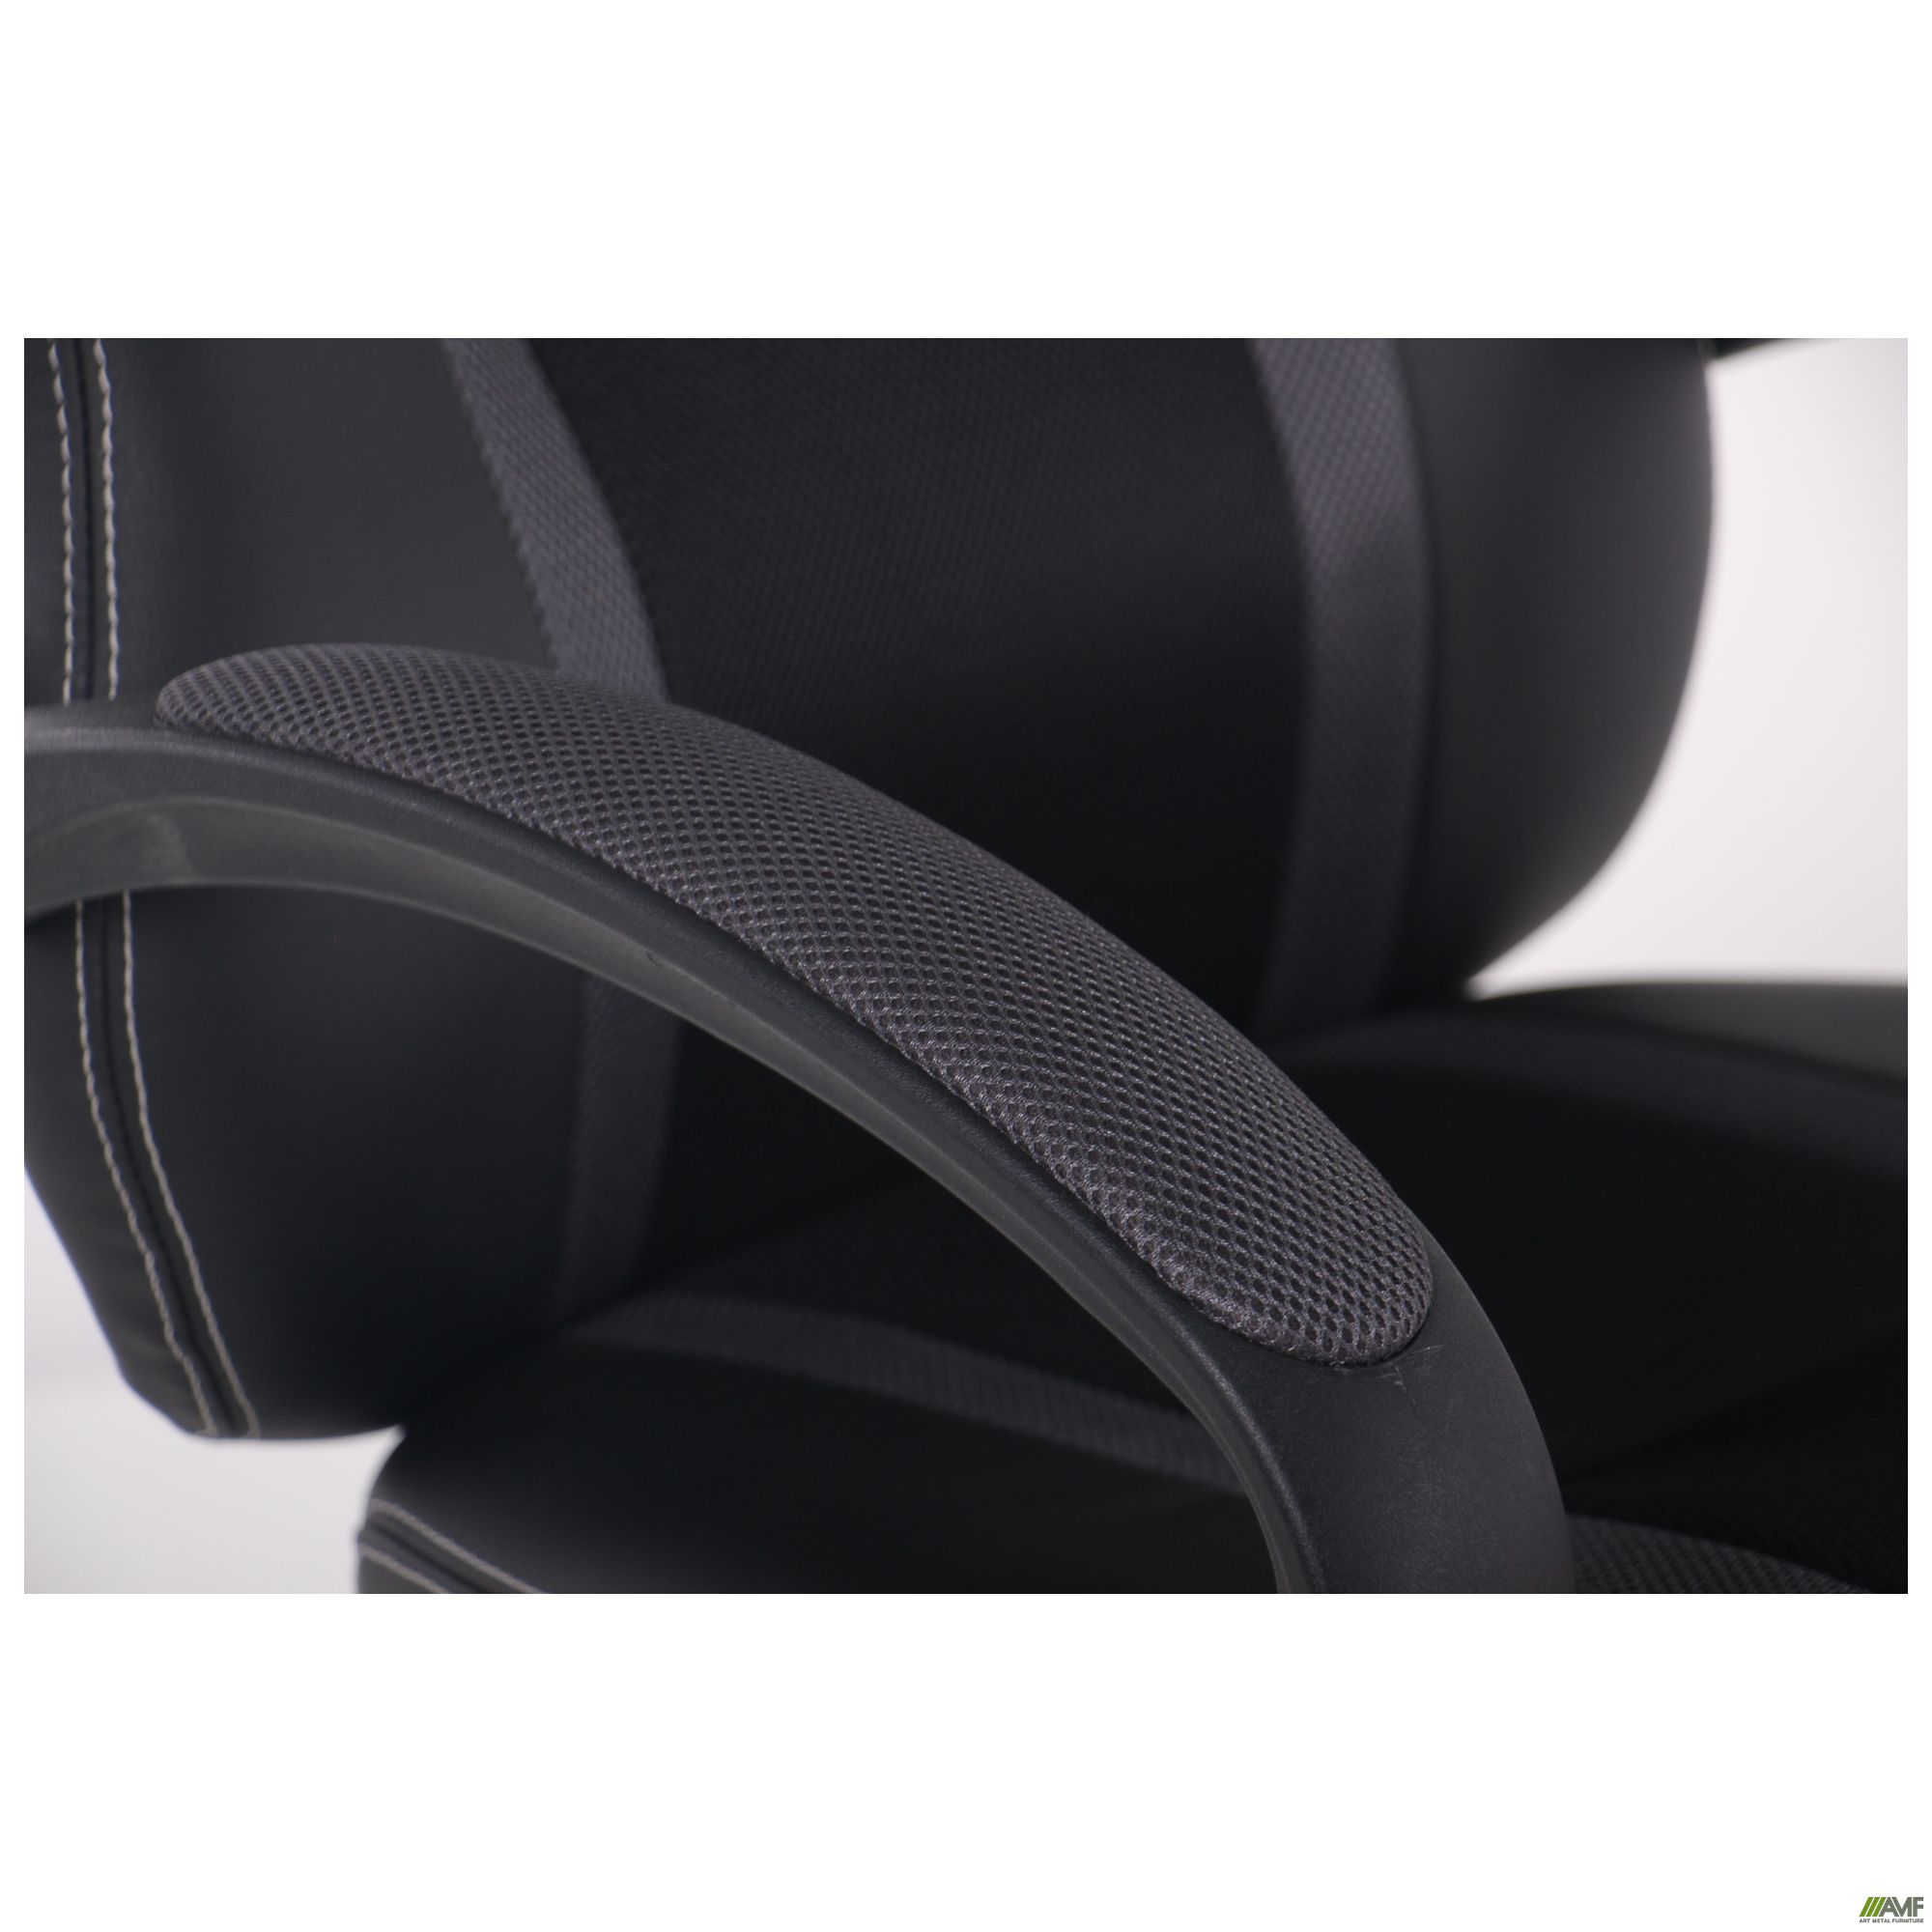 Фото 15 - Кресло Shift Неаполь N-20/Сетка черная, вставки Сетка серая 